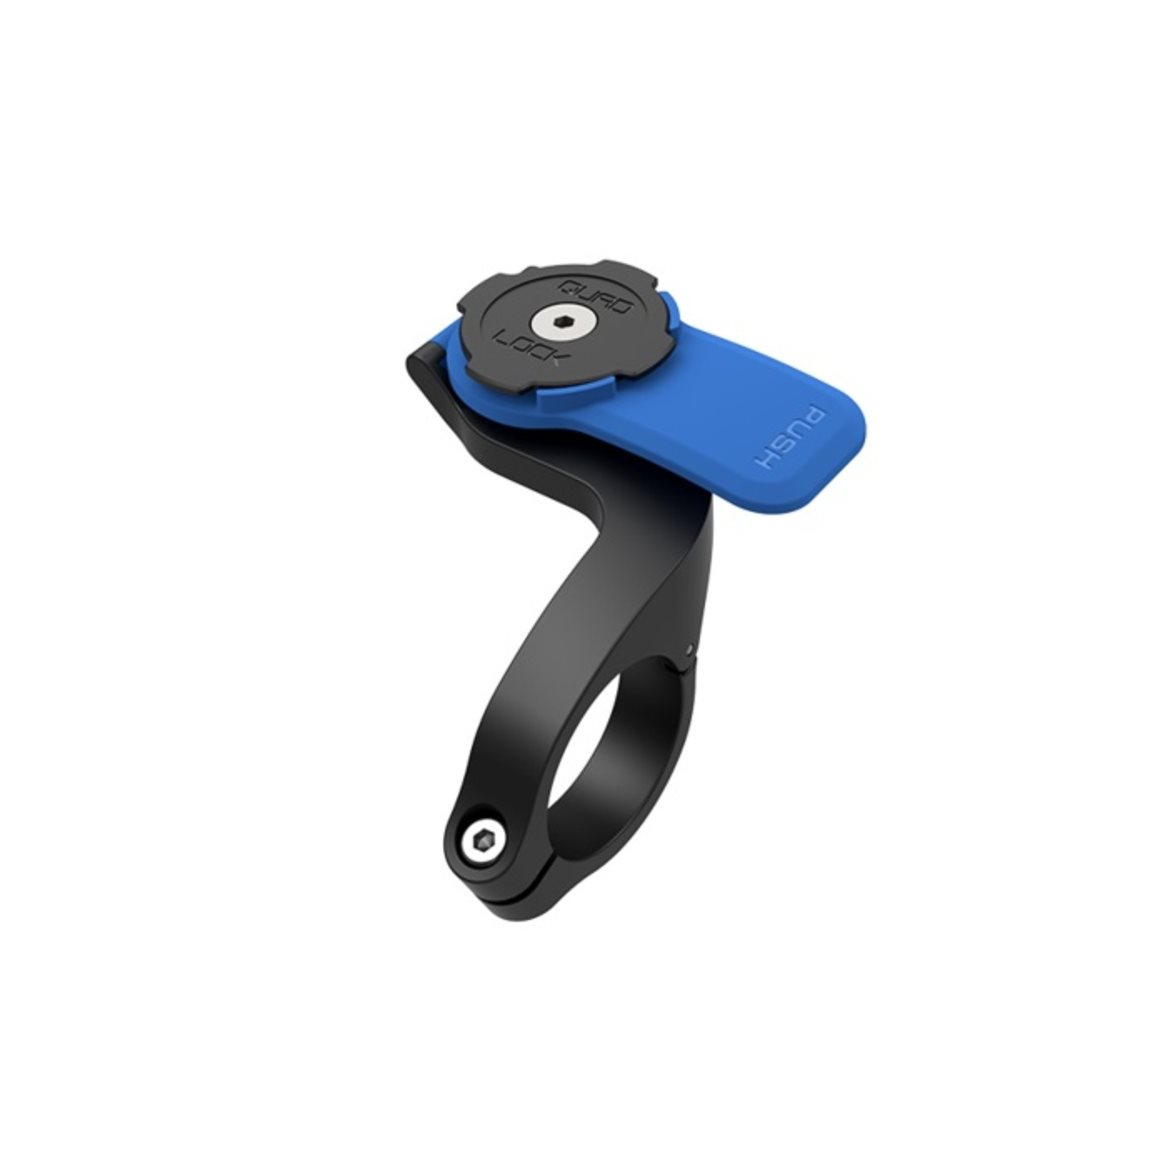 Köp Quad Lock Phone Case - iPhone 12/12 Pro på  ✓ Enormt  sortiment inom Cykel, elcykel och cykel tillbehör ✓ Bra priser ✓ Snabb  leverans